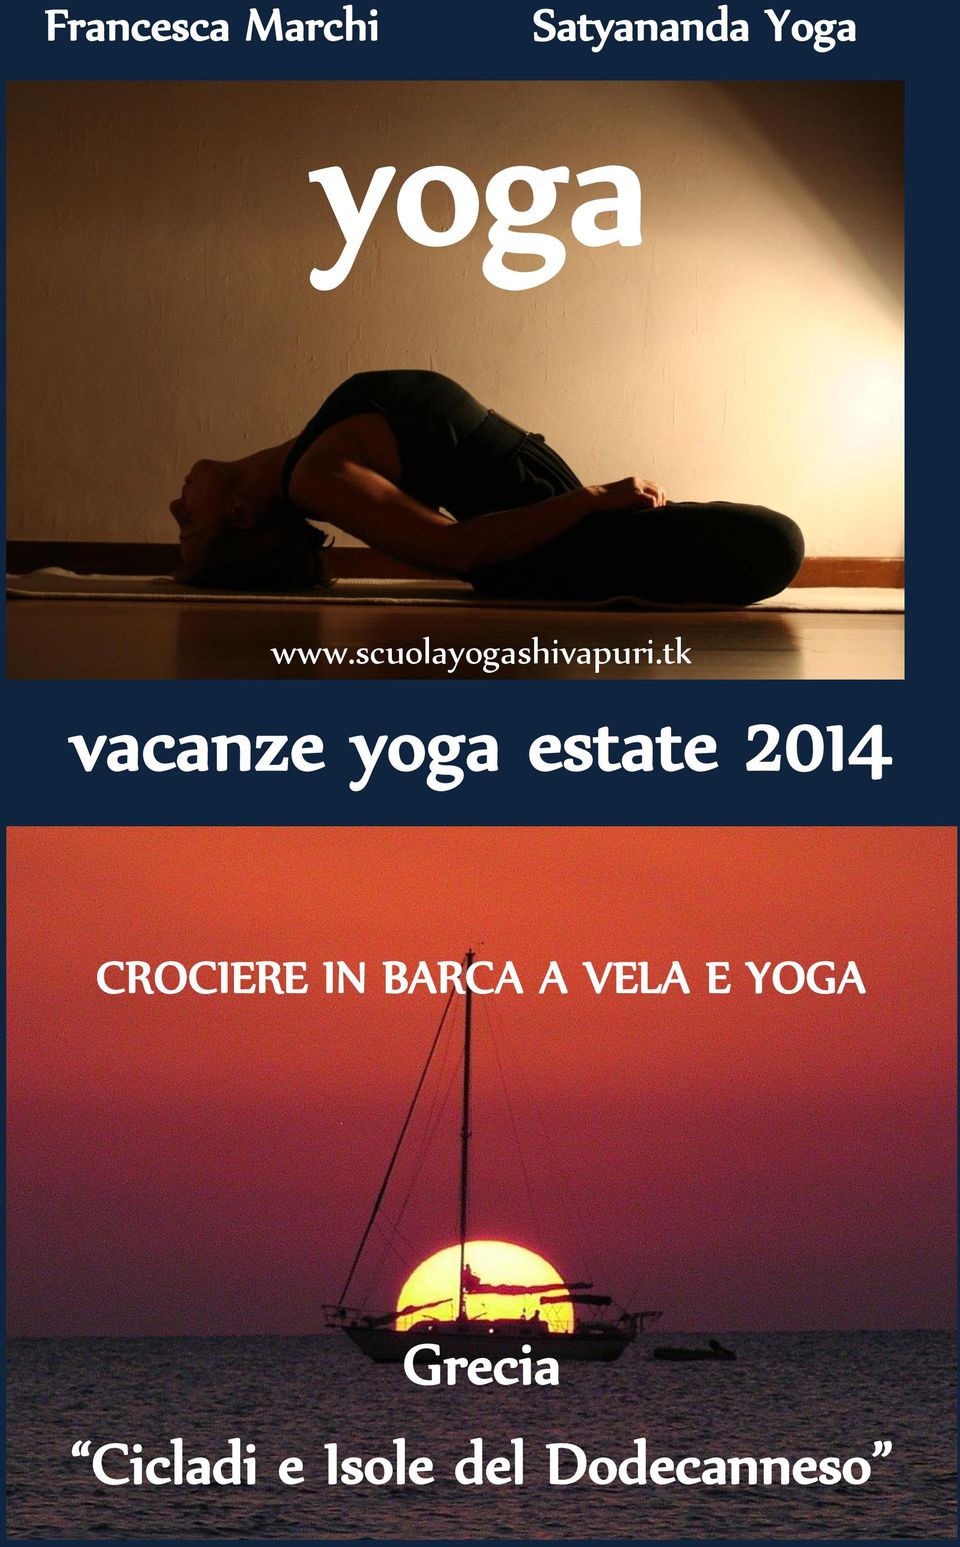 tk vacanze yoga estate 2014 CROCIERE IN